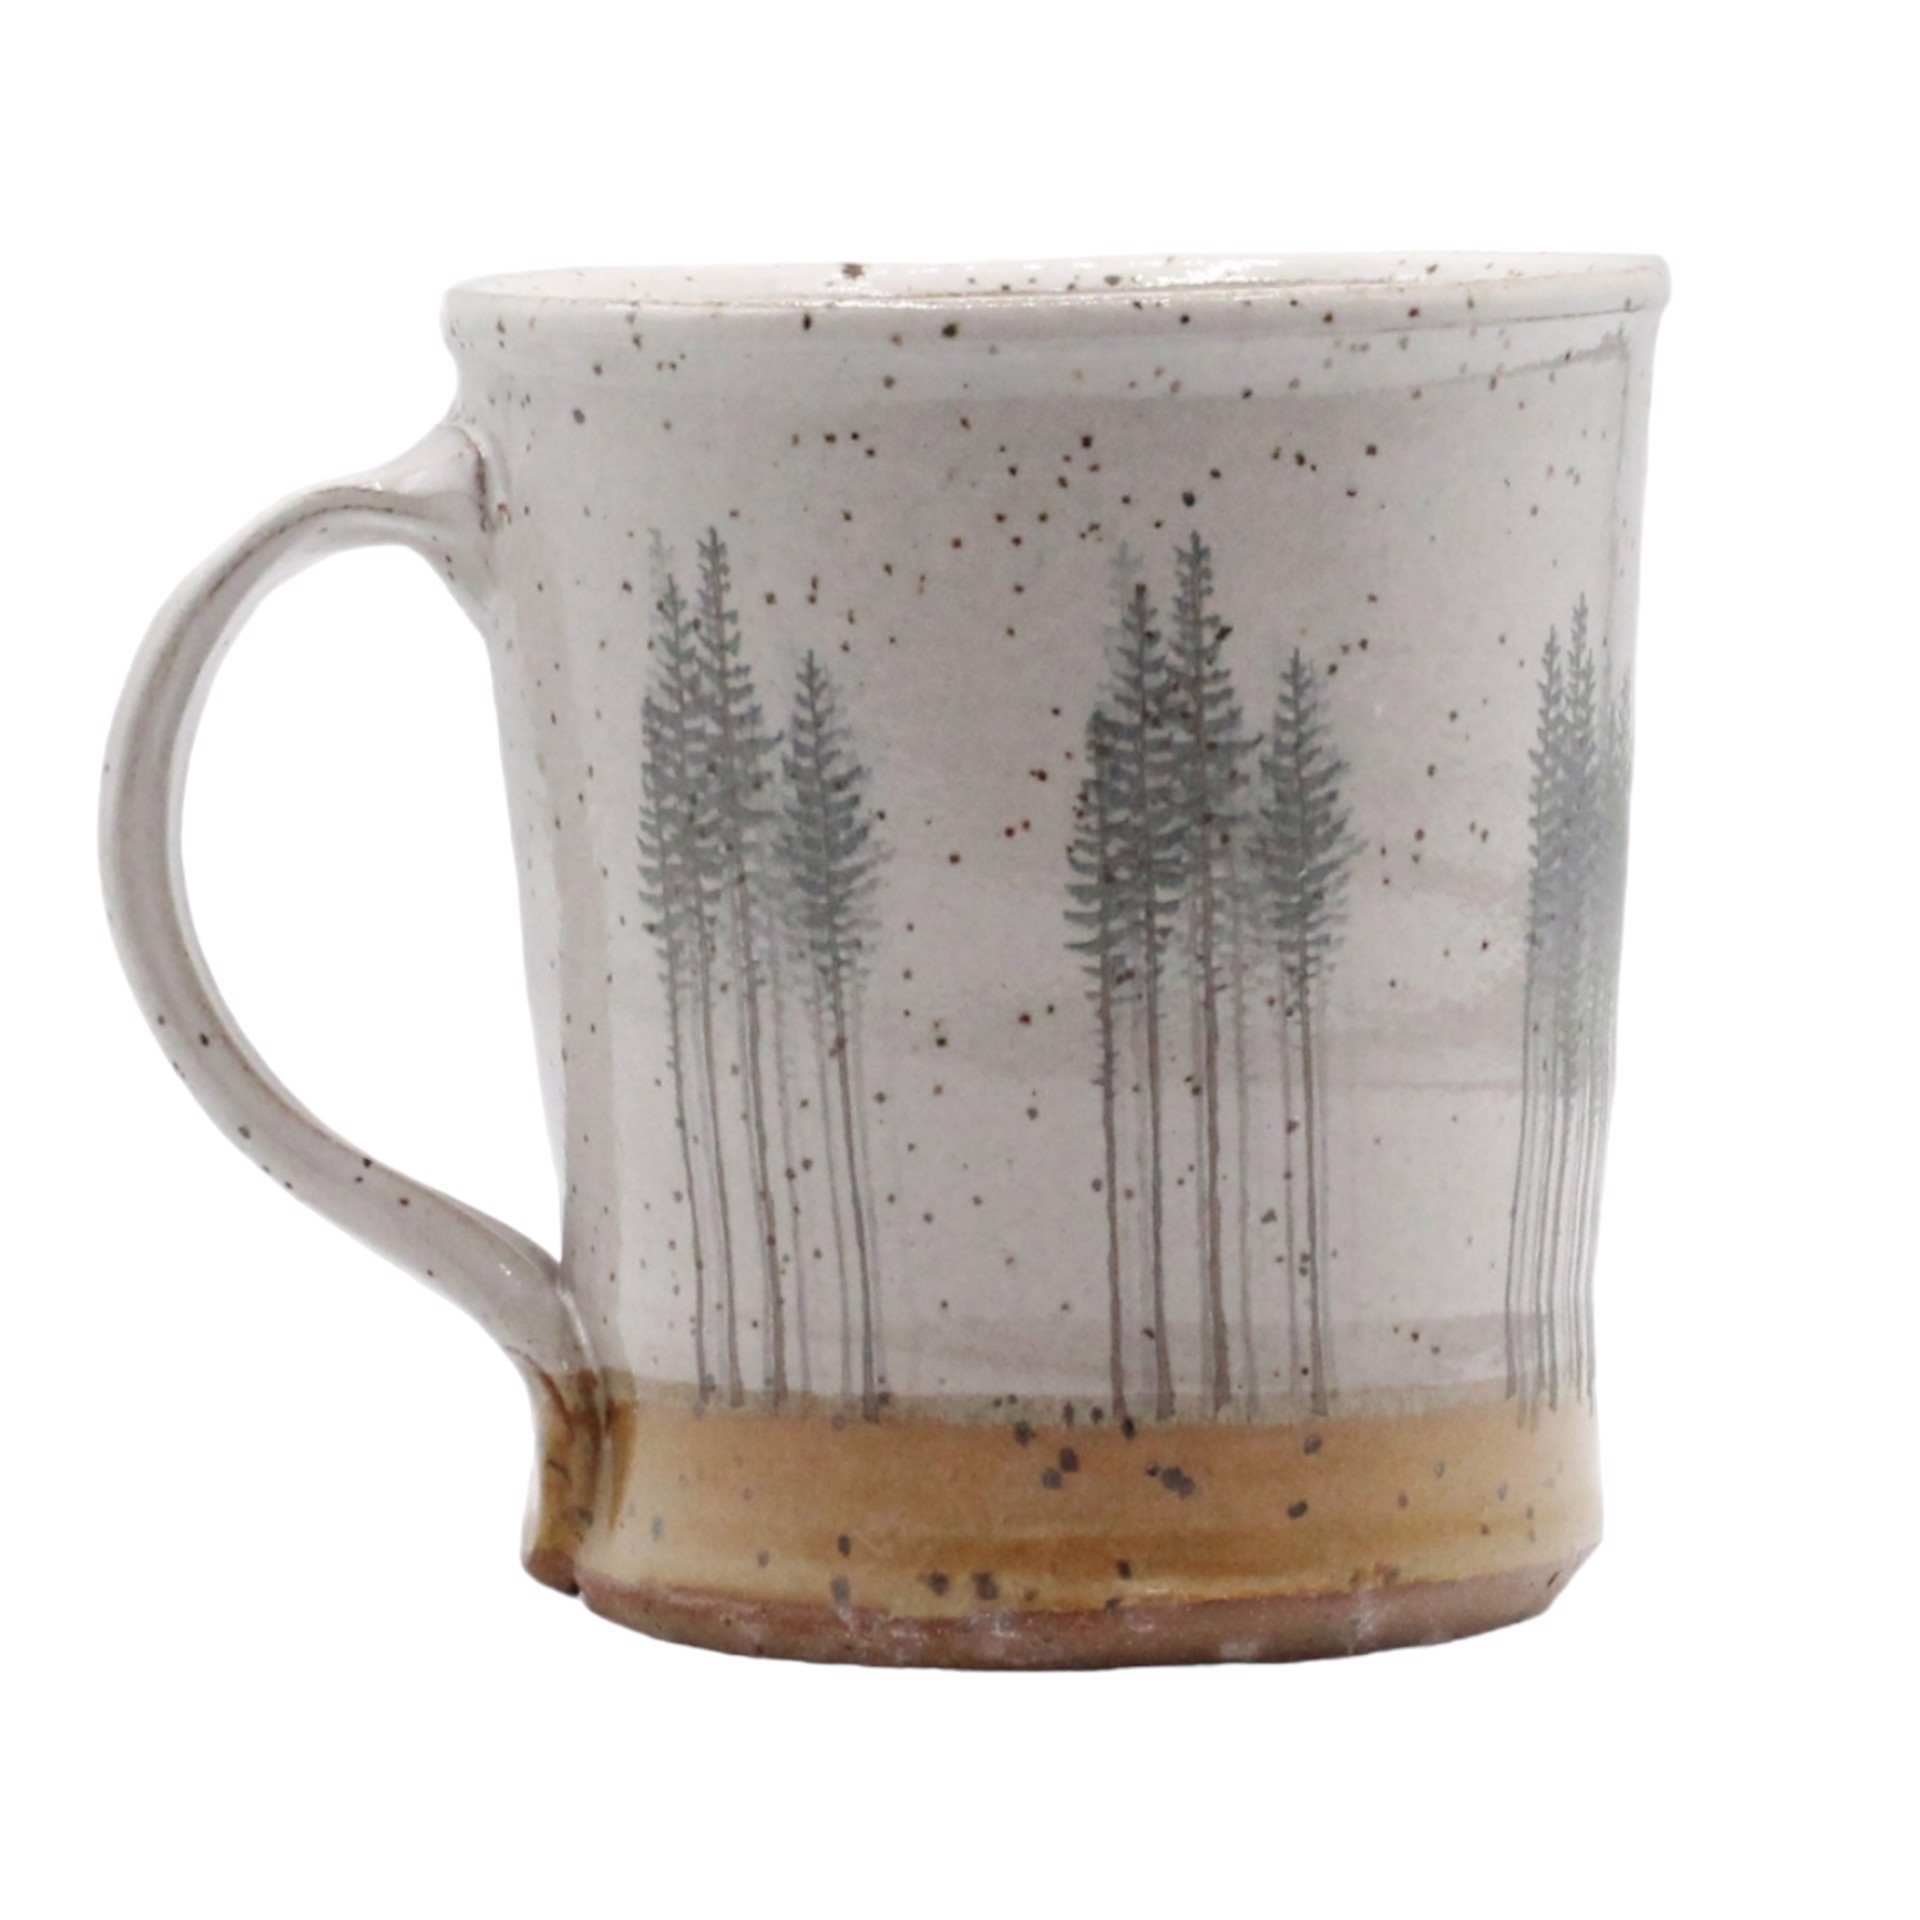 Meadow Pine Mug by Stephen Mullins